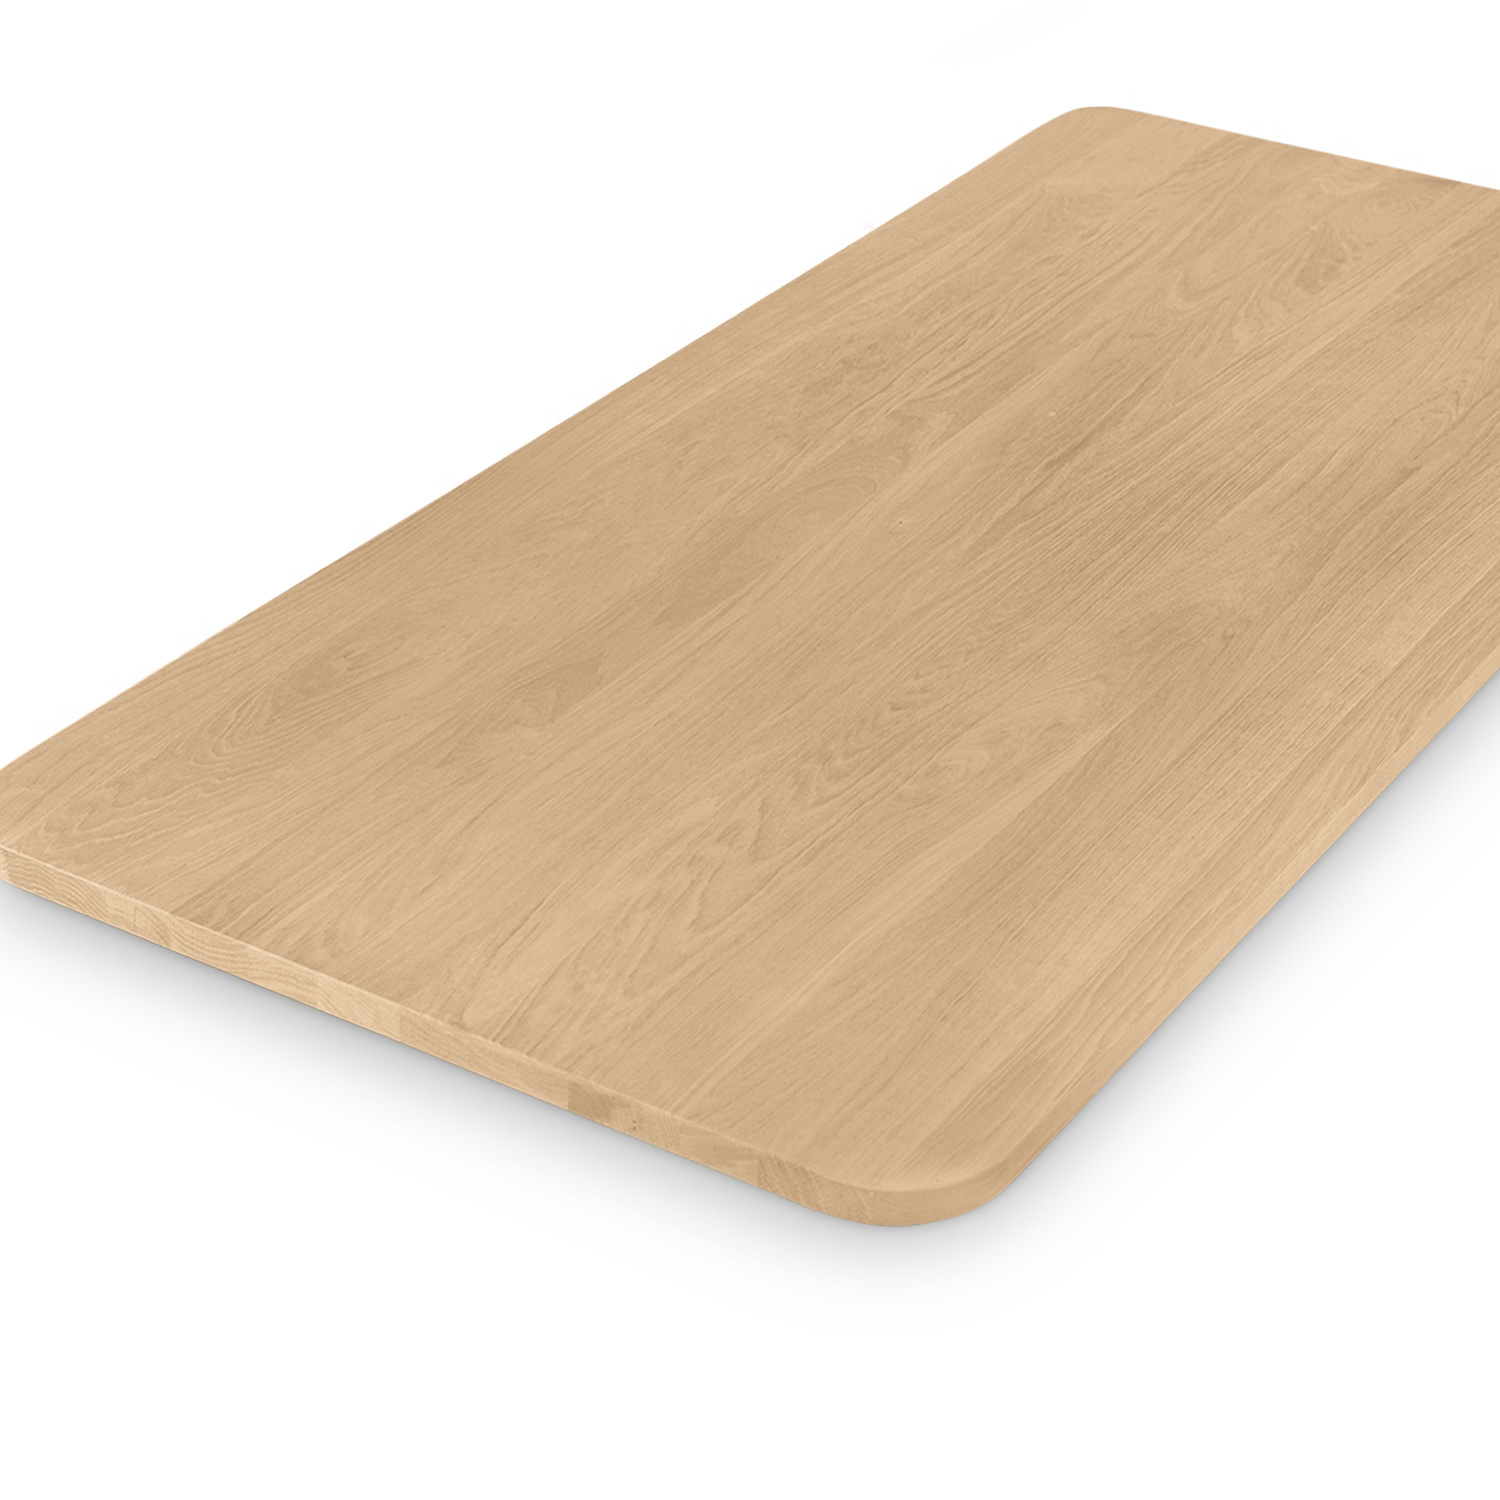  Eiken tafelblad met ronde hoeken - 2,7 cm dik (1-laag) - Diverse afmetingen - foutvrij Europees eikenhout - met brede lamellen (circa 10-12 cm) - verlijmd kd 8-12%